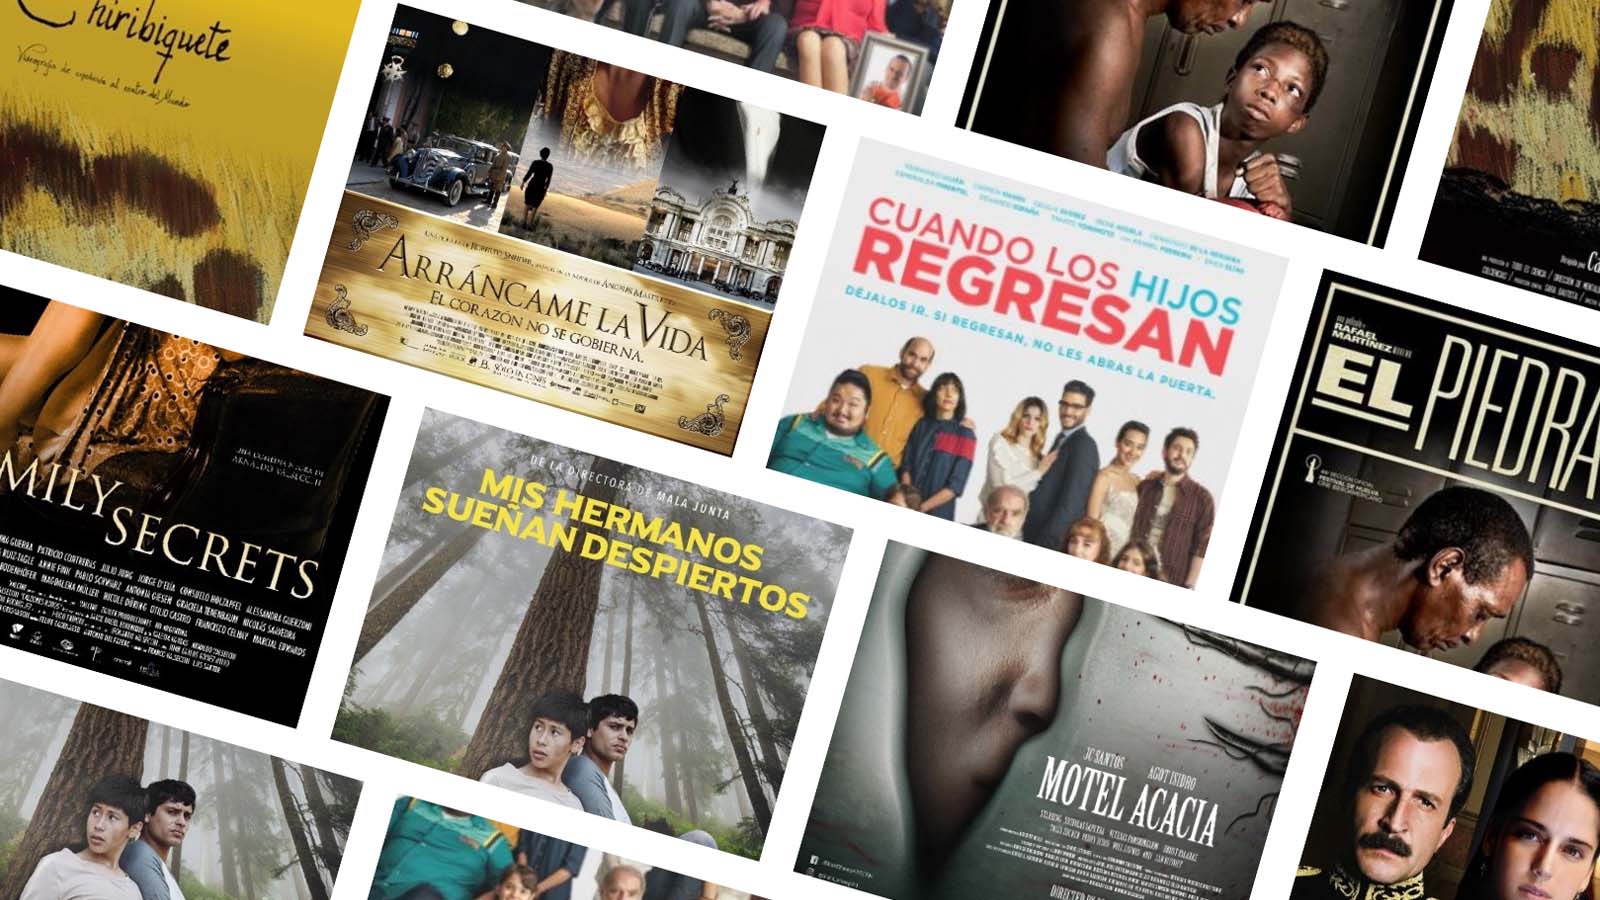 Latin American Films to Screen for Free at Shangri-La | LaJornadaFilipina.com